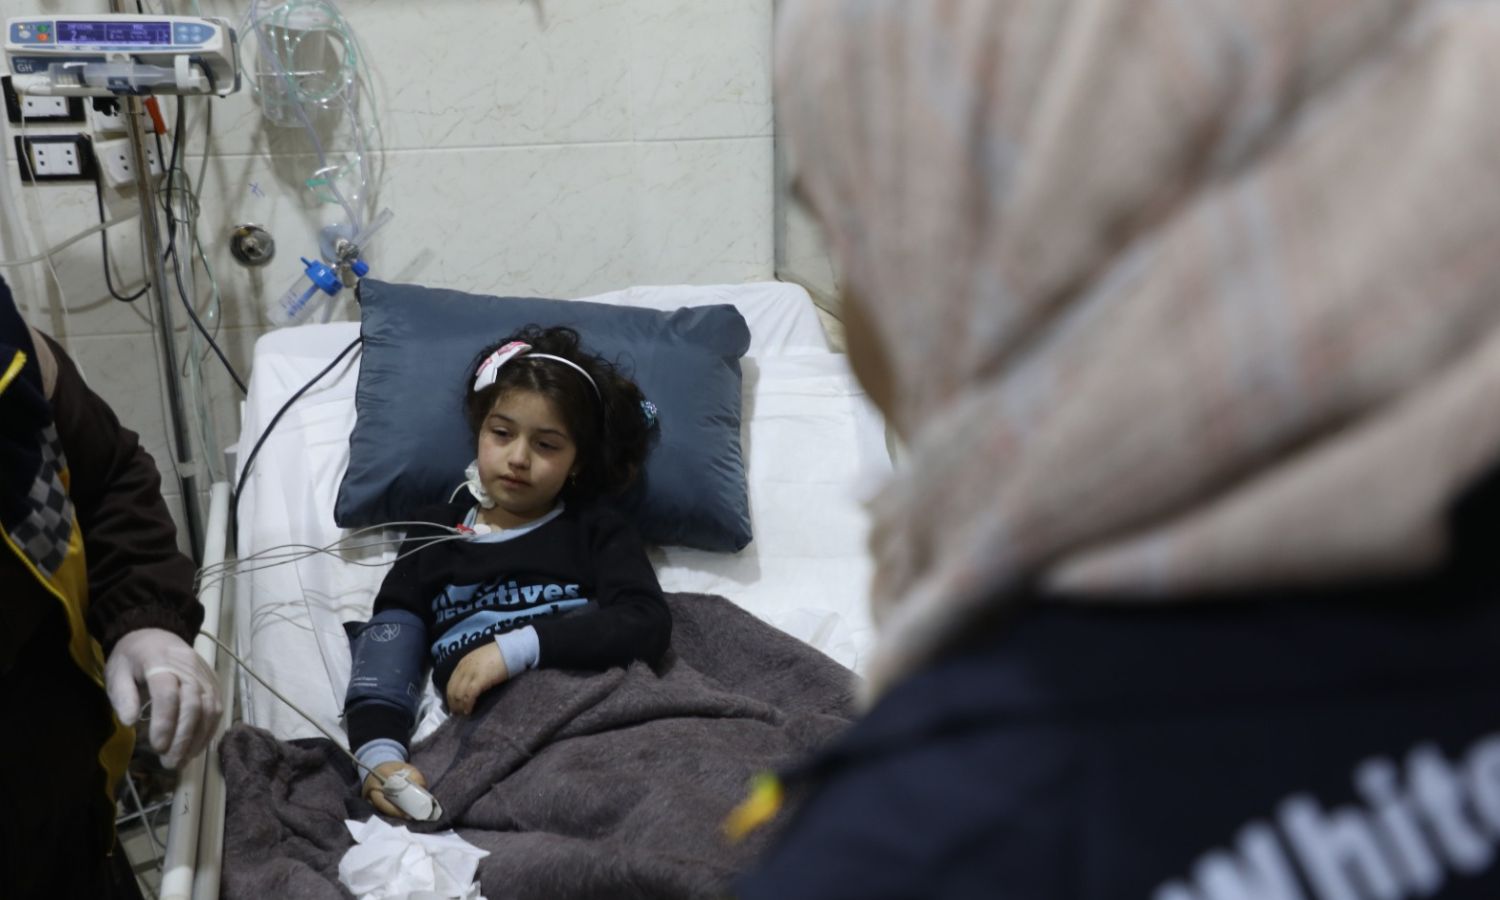 الطفلة شام في مستشفى في إدلب بعد إنقاذها من تحت الأنقاض في بلدة أرمناز بريف إدلب إثر زلزال ضرب المنطقة- 7 من شباط 2023 (الدفاع المدني السوري/ فيس بوك)